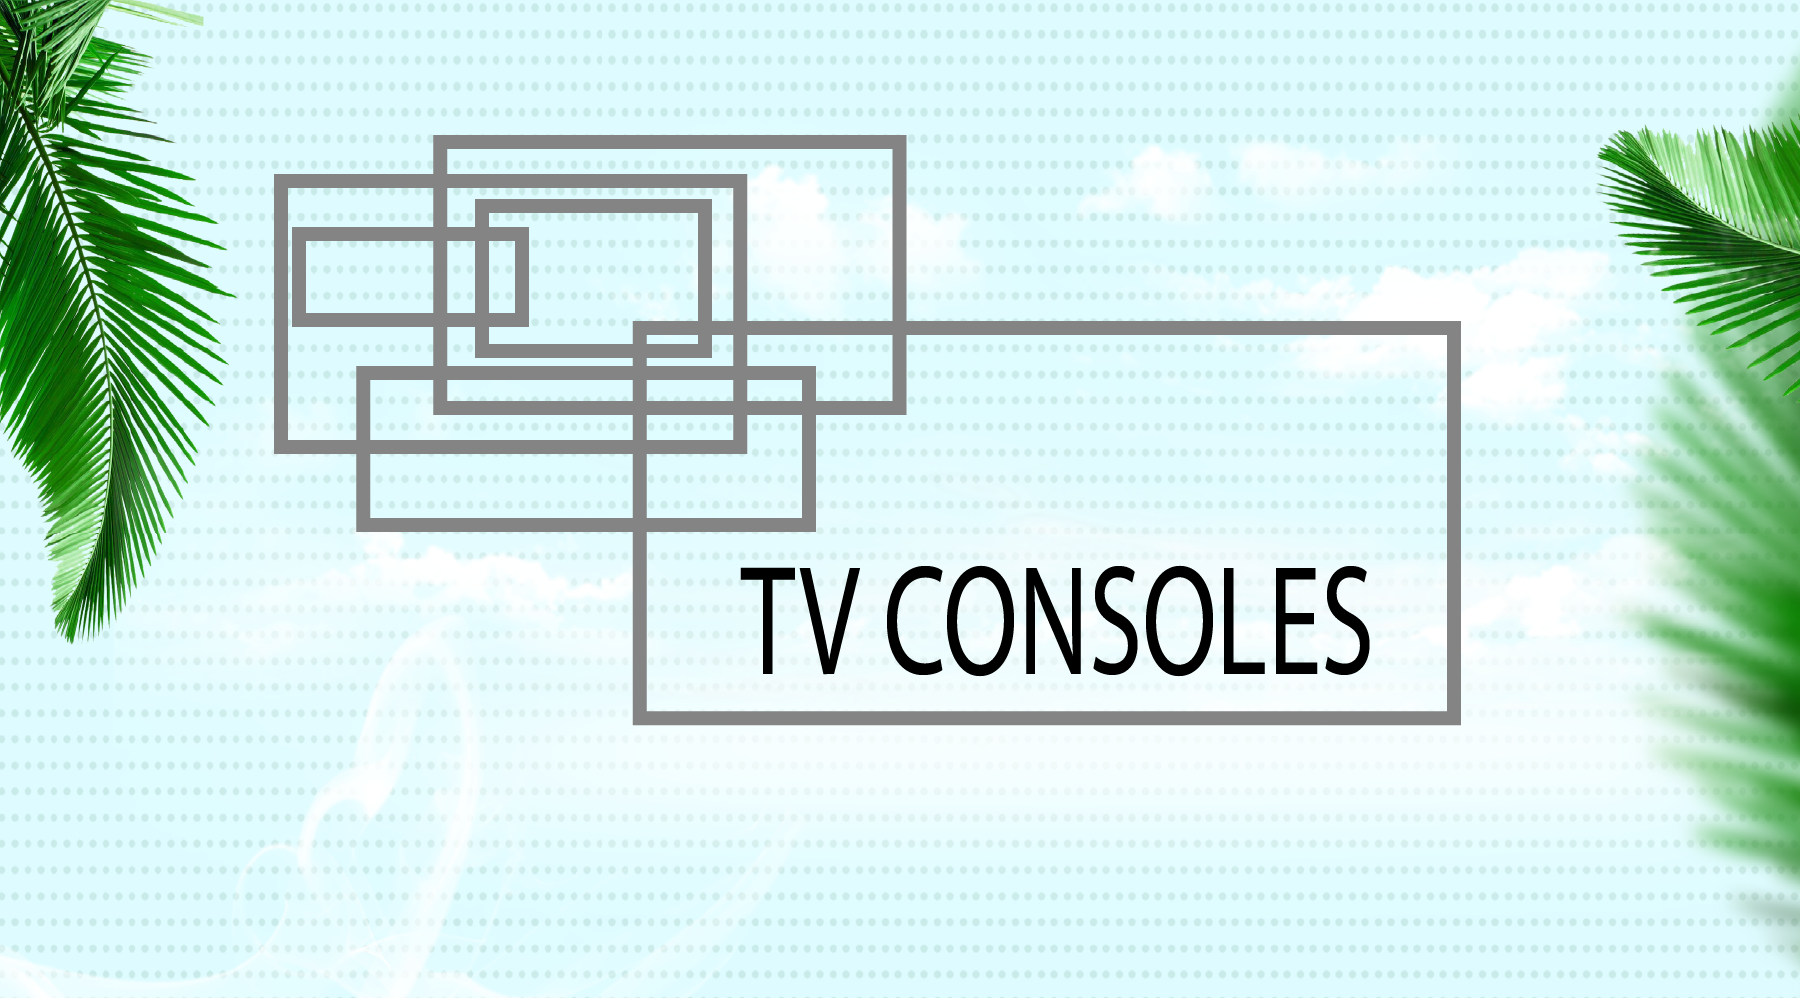 TV consoles